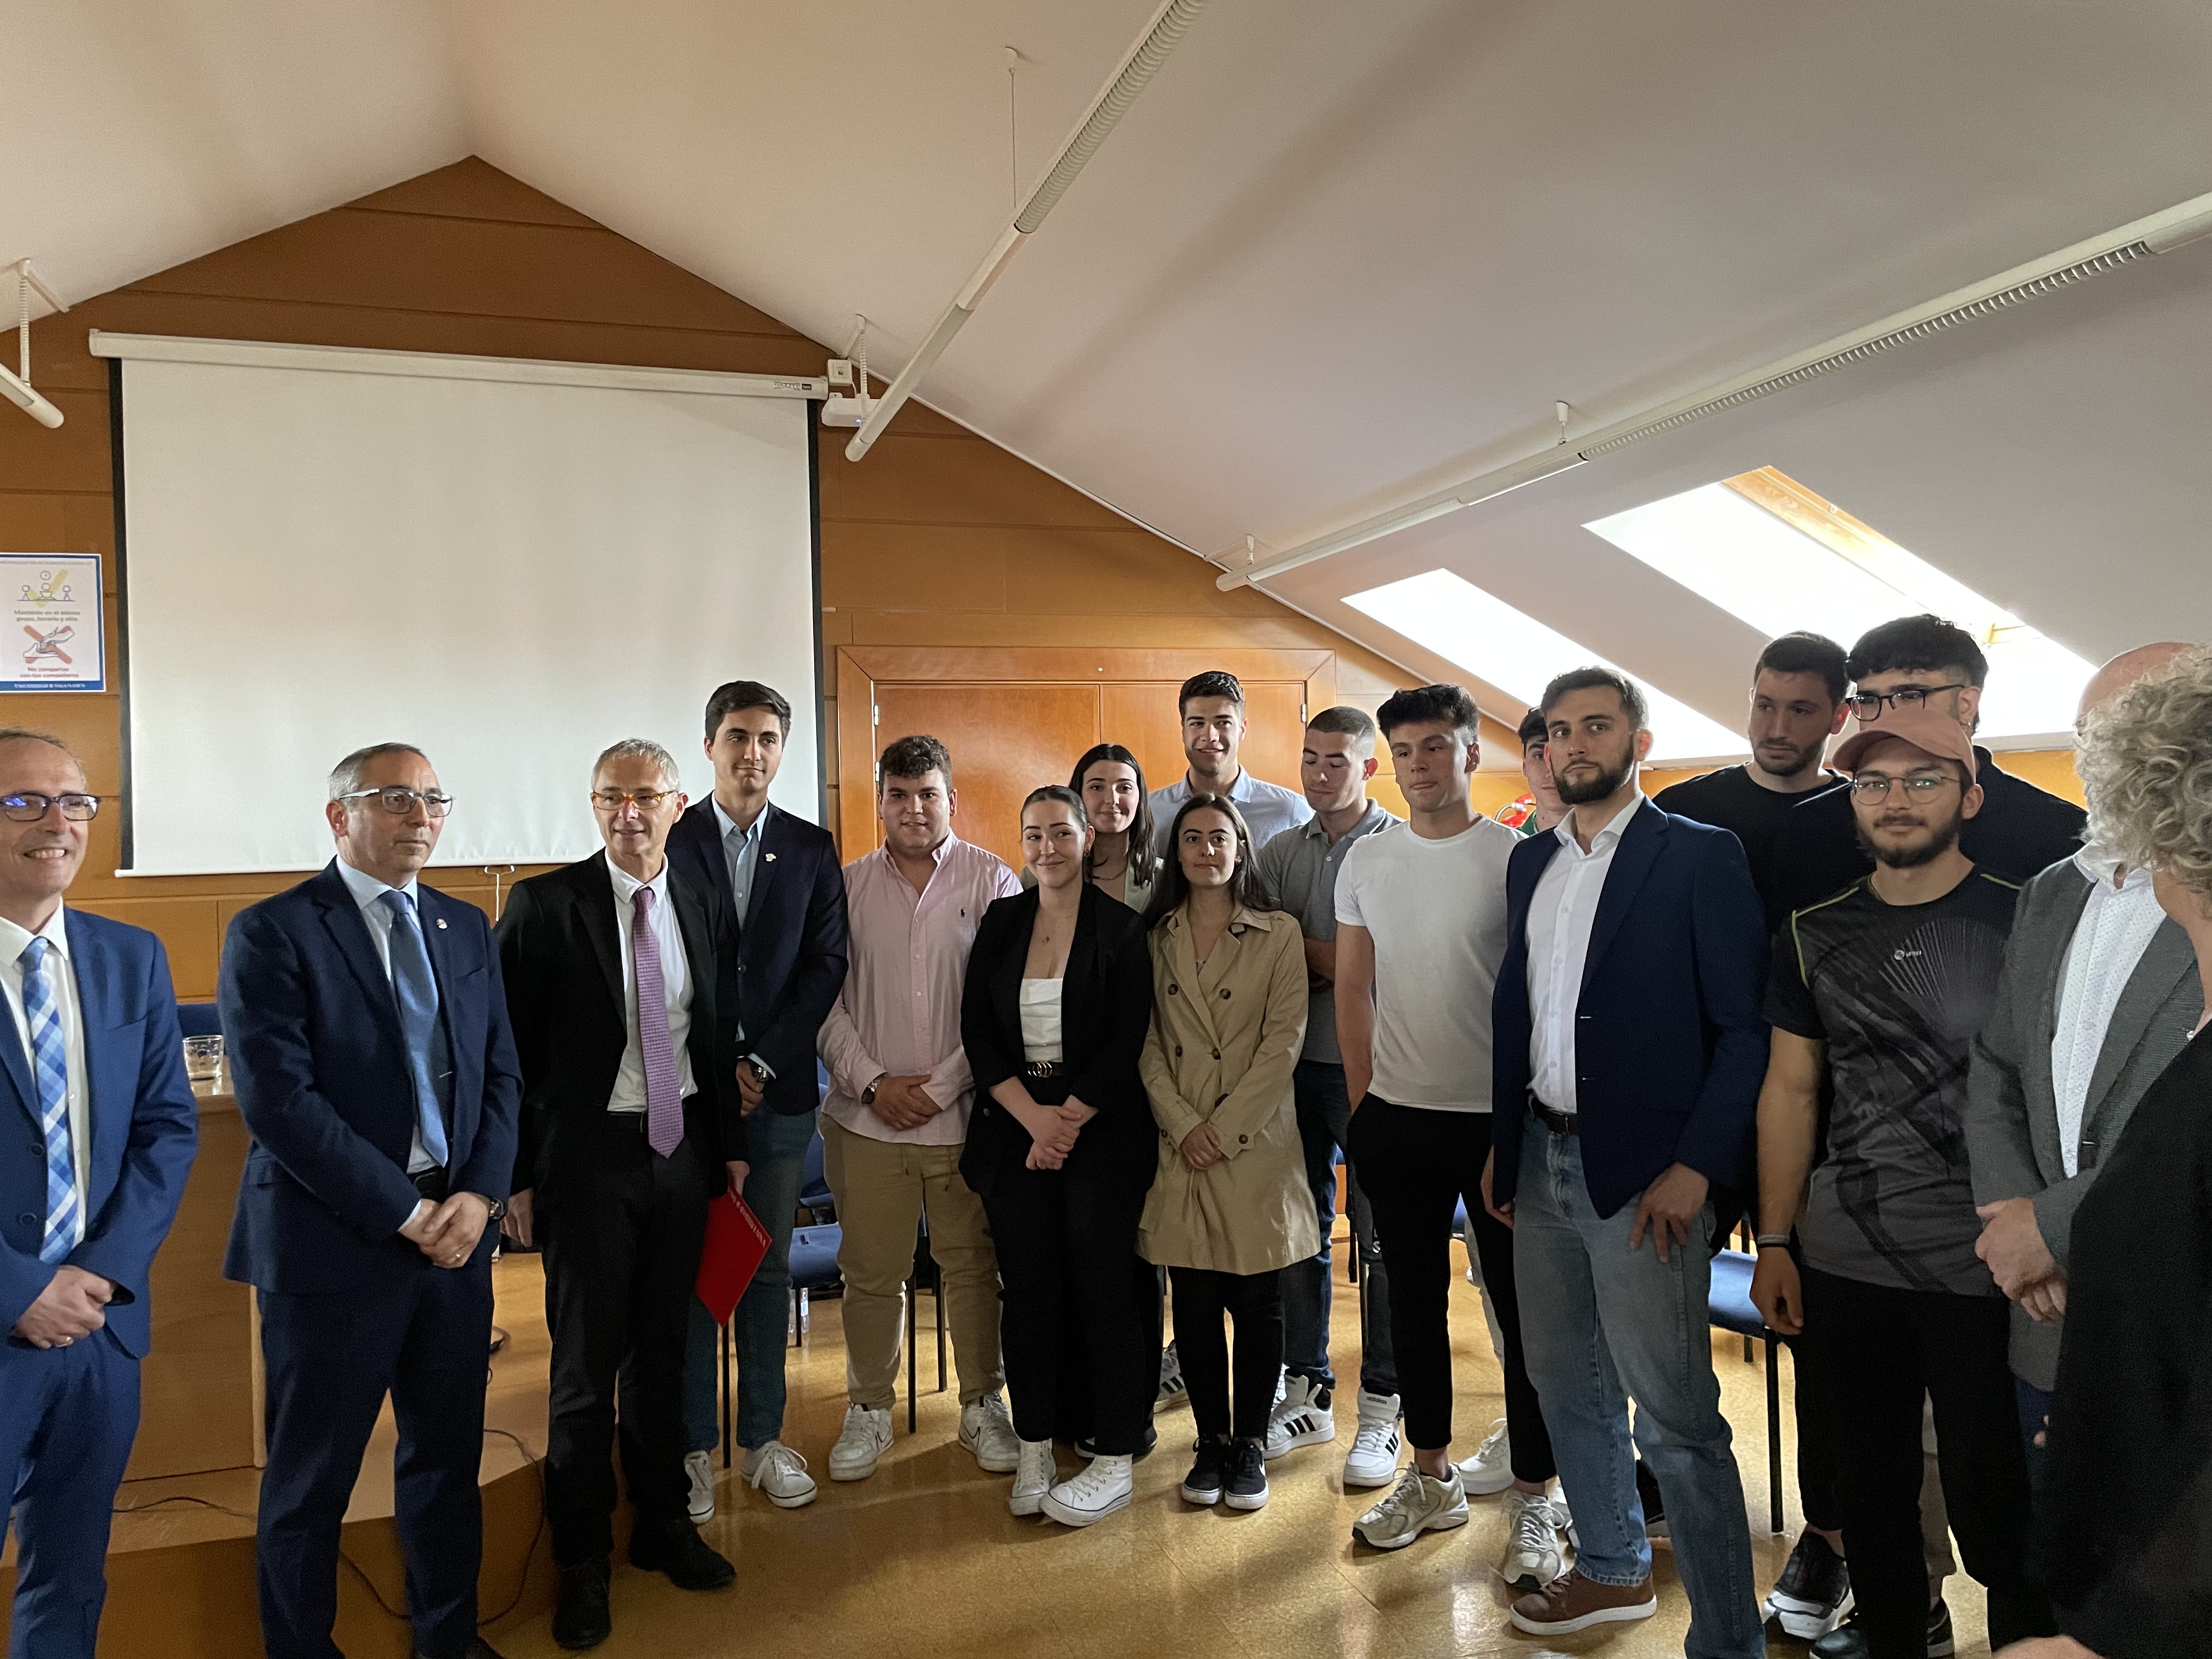 La Universidad de Salamanca presenta al equipo ‘Fórmula USAL’ y su proyecto de coche eléctrico para la competición internacional ‘Formula Student’